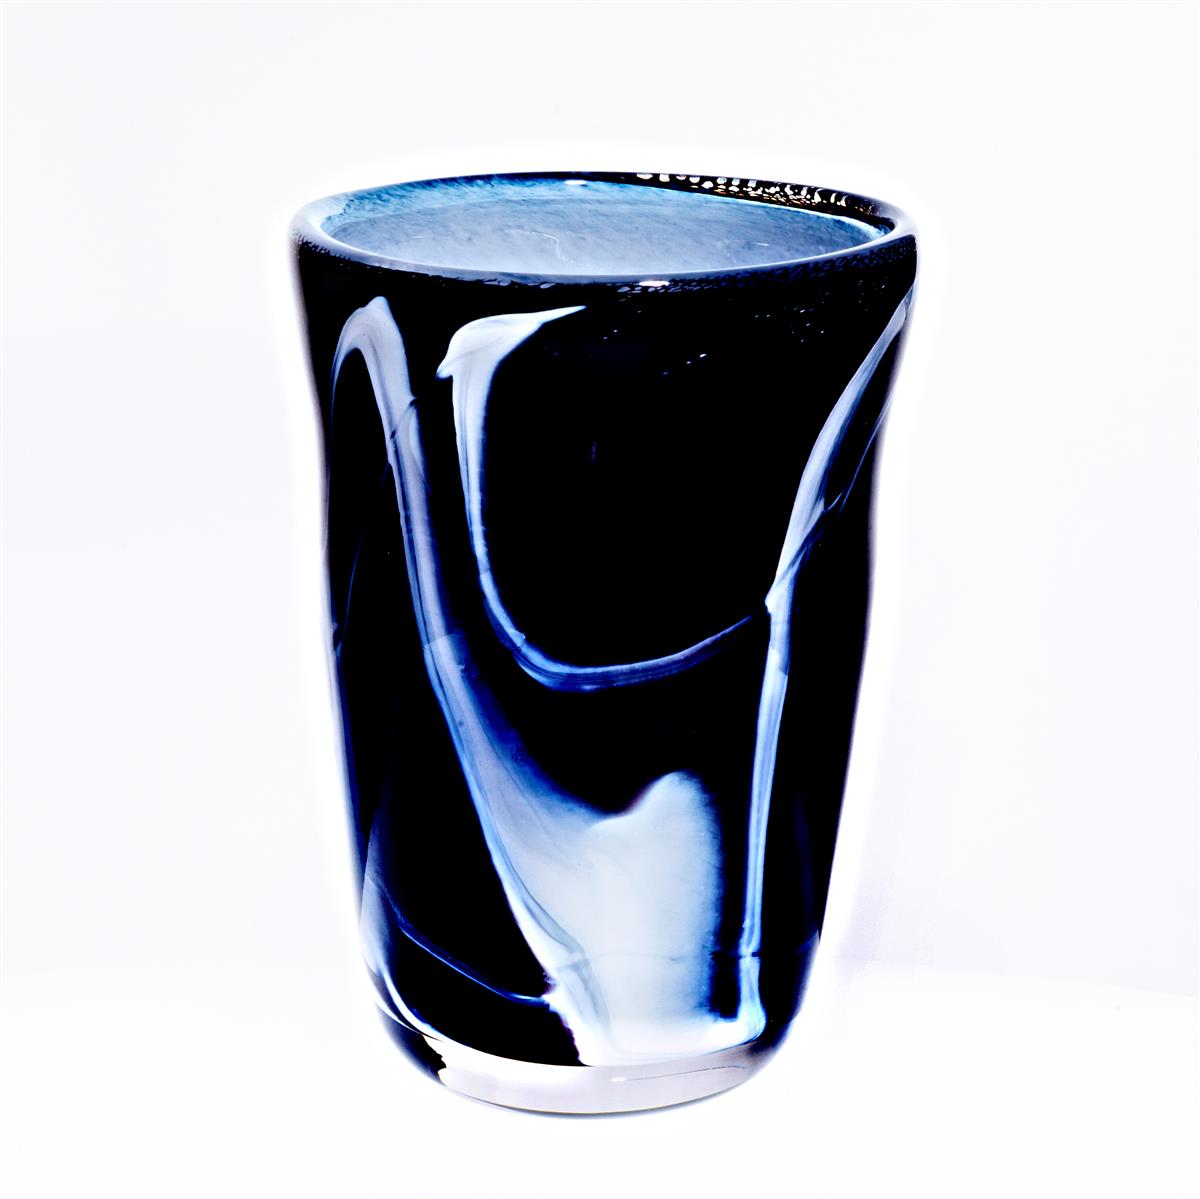 Vase schwarz weiß "Pavel" (18cm)